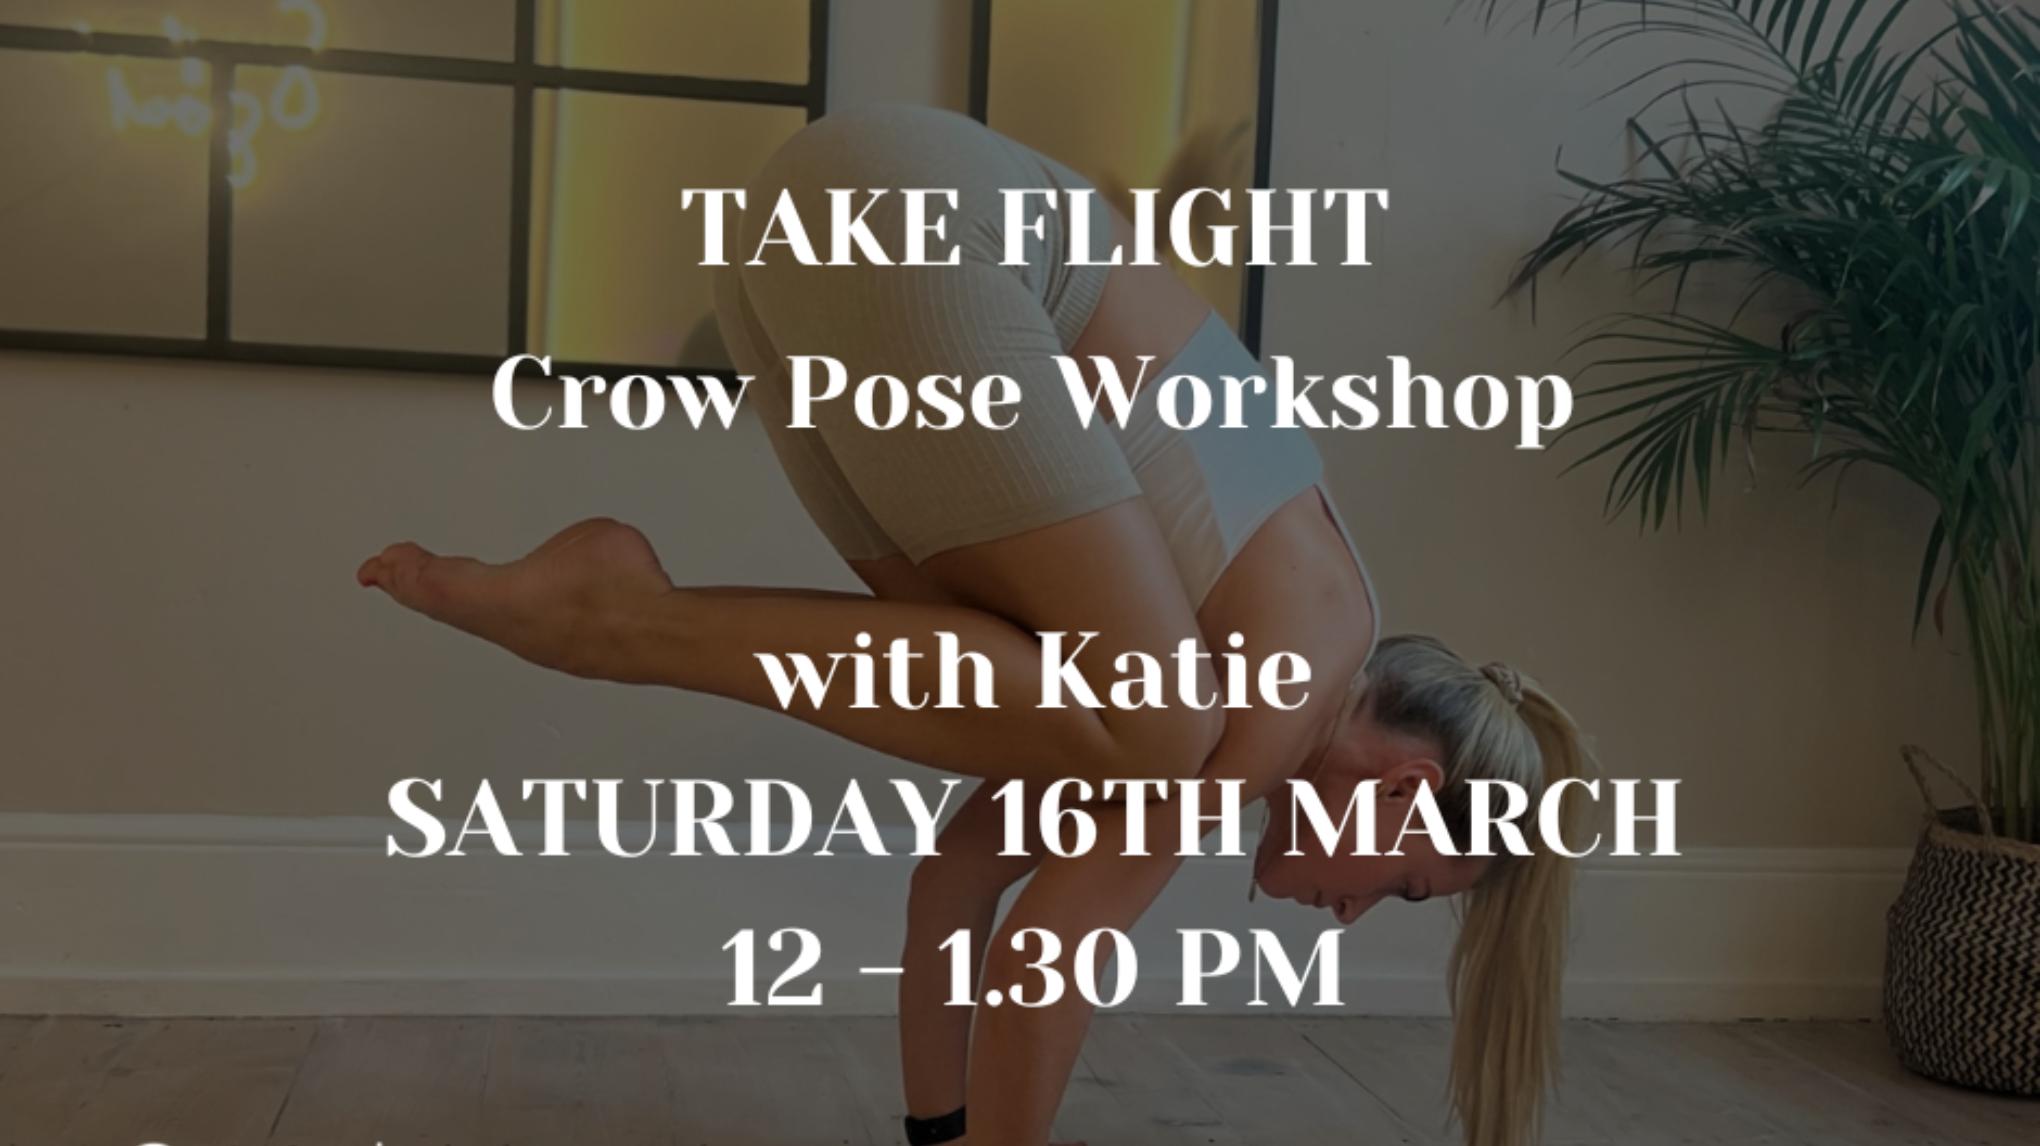 TAKE FLIGHT: Crow Pose Workshop